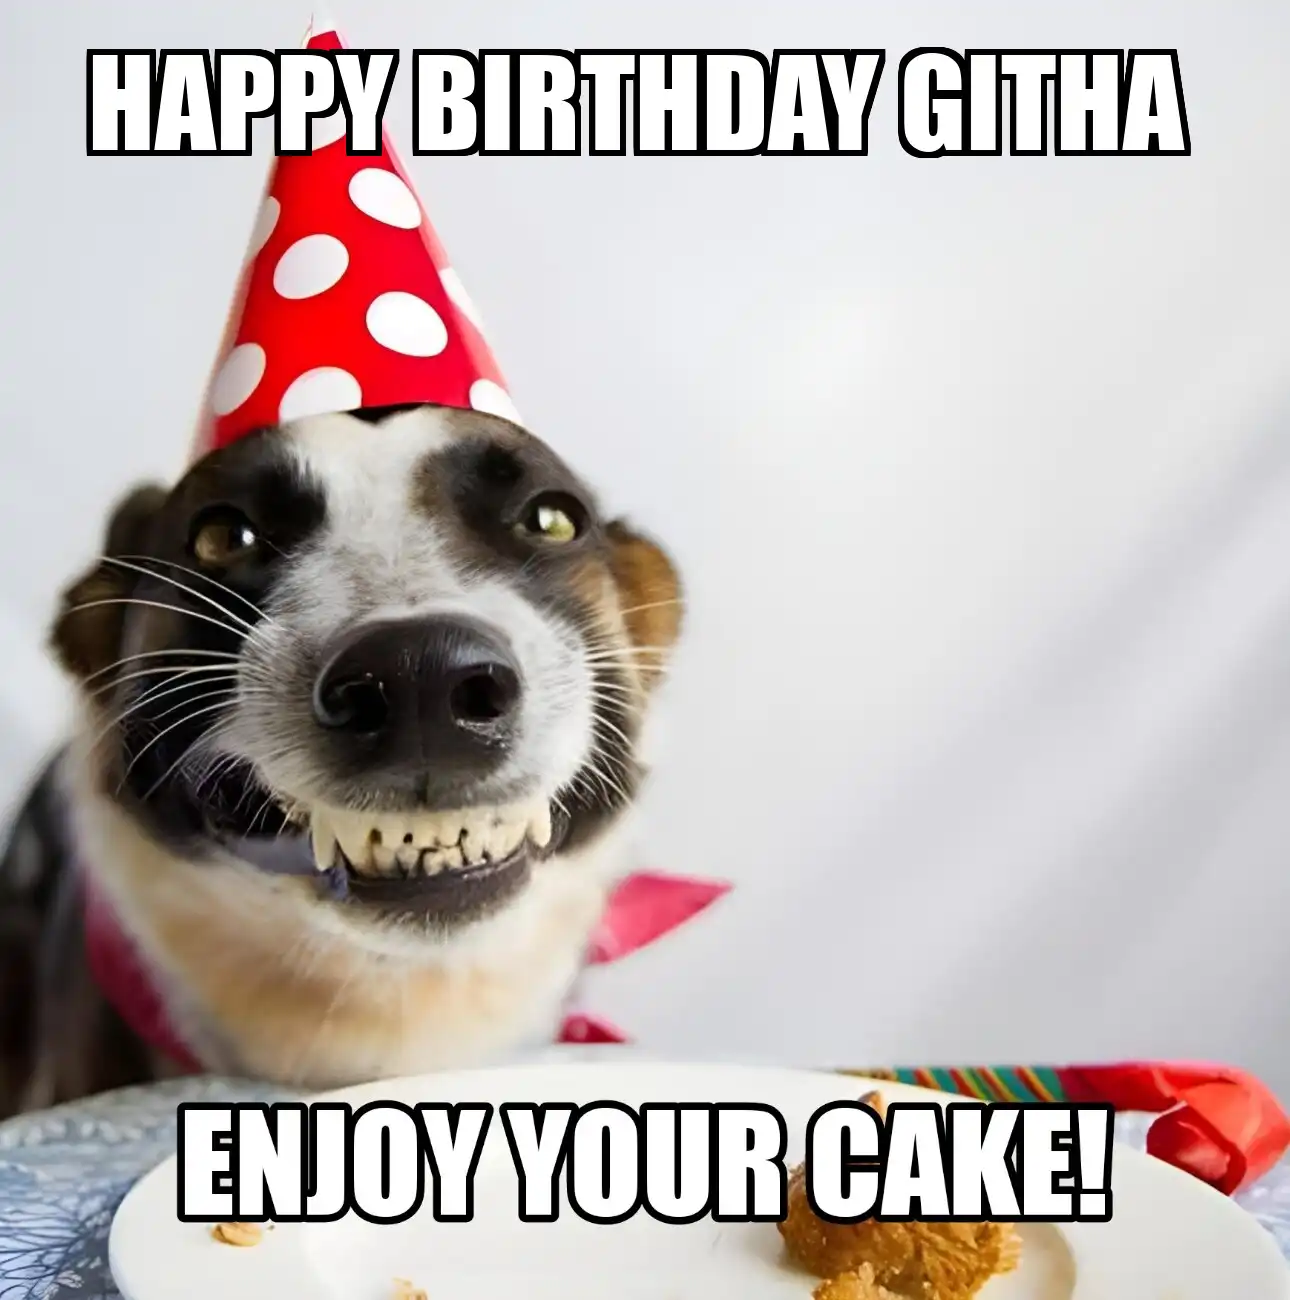 Happy Birthday Githa Enjoy Your Cake Dog Meme